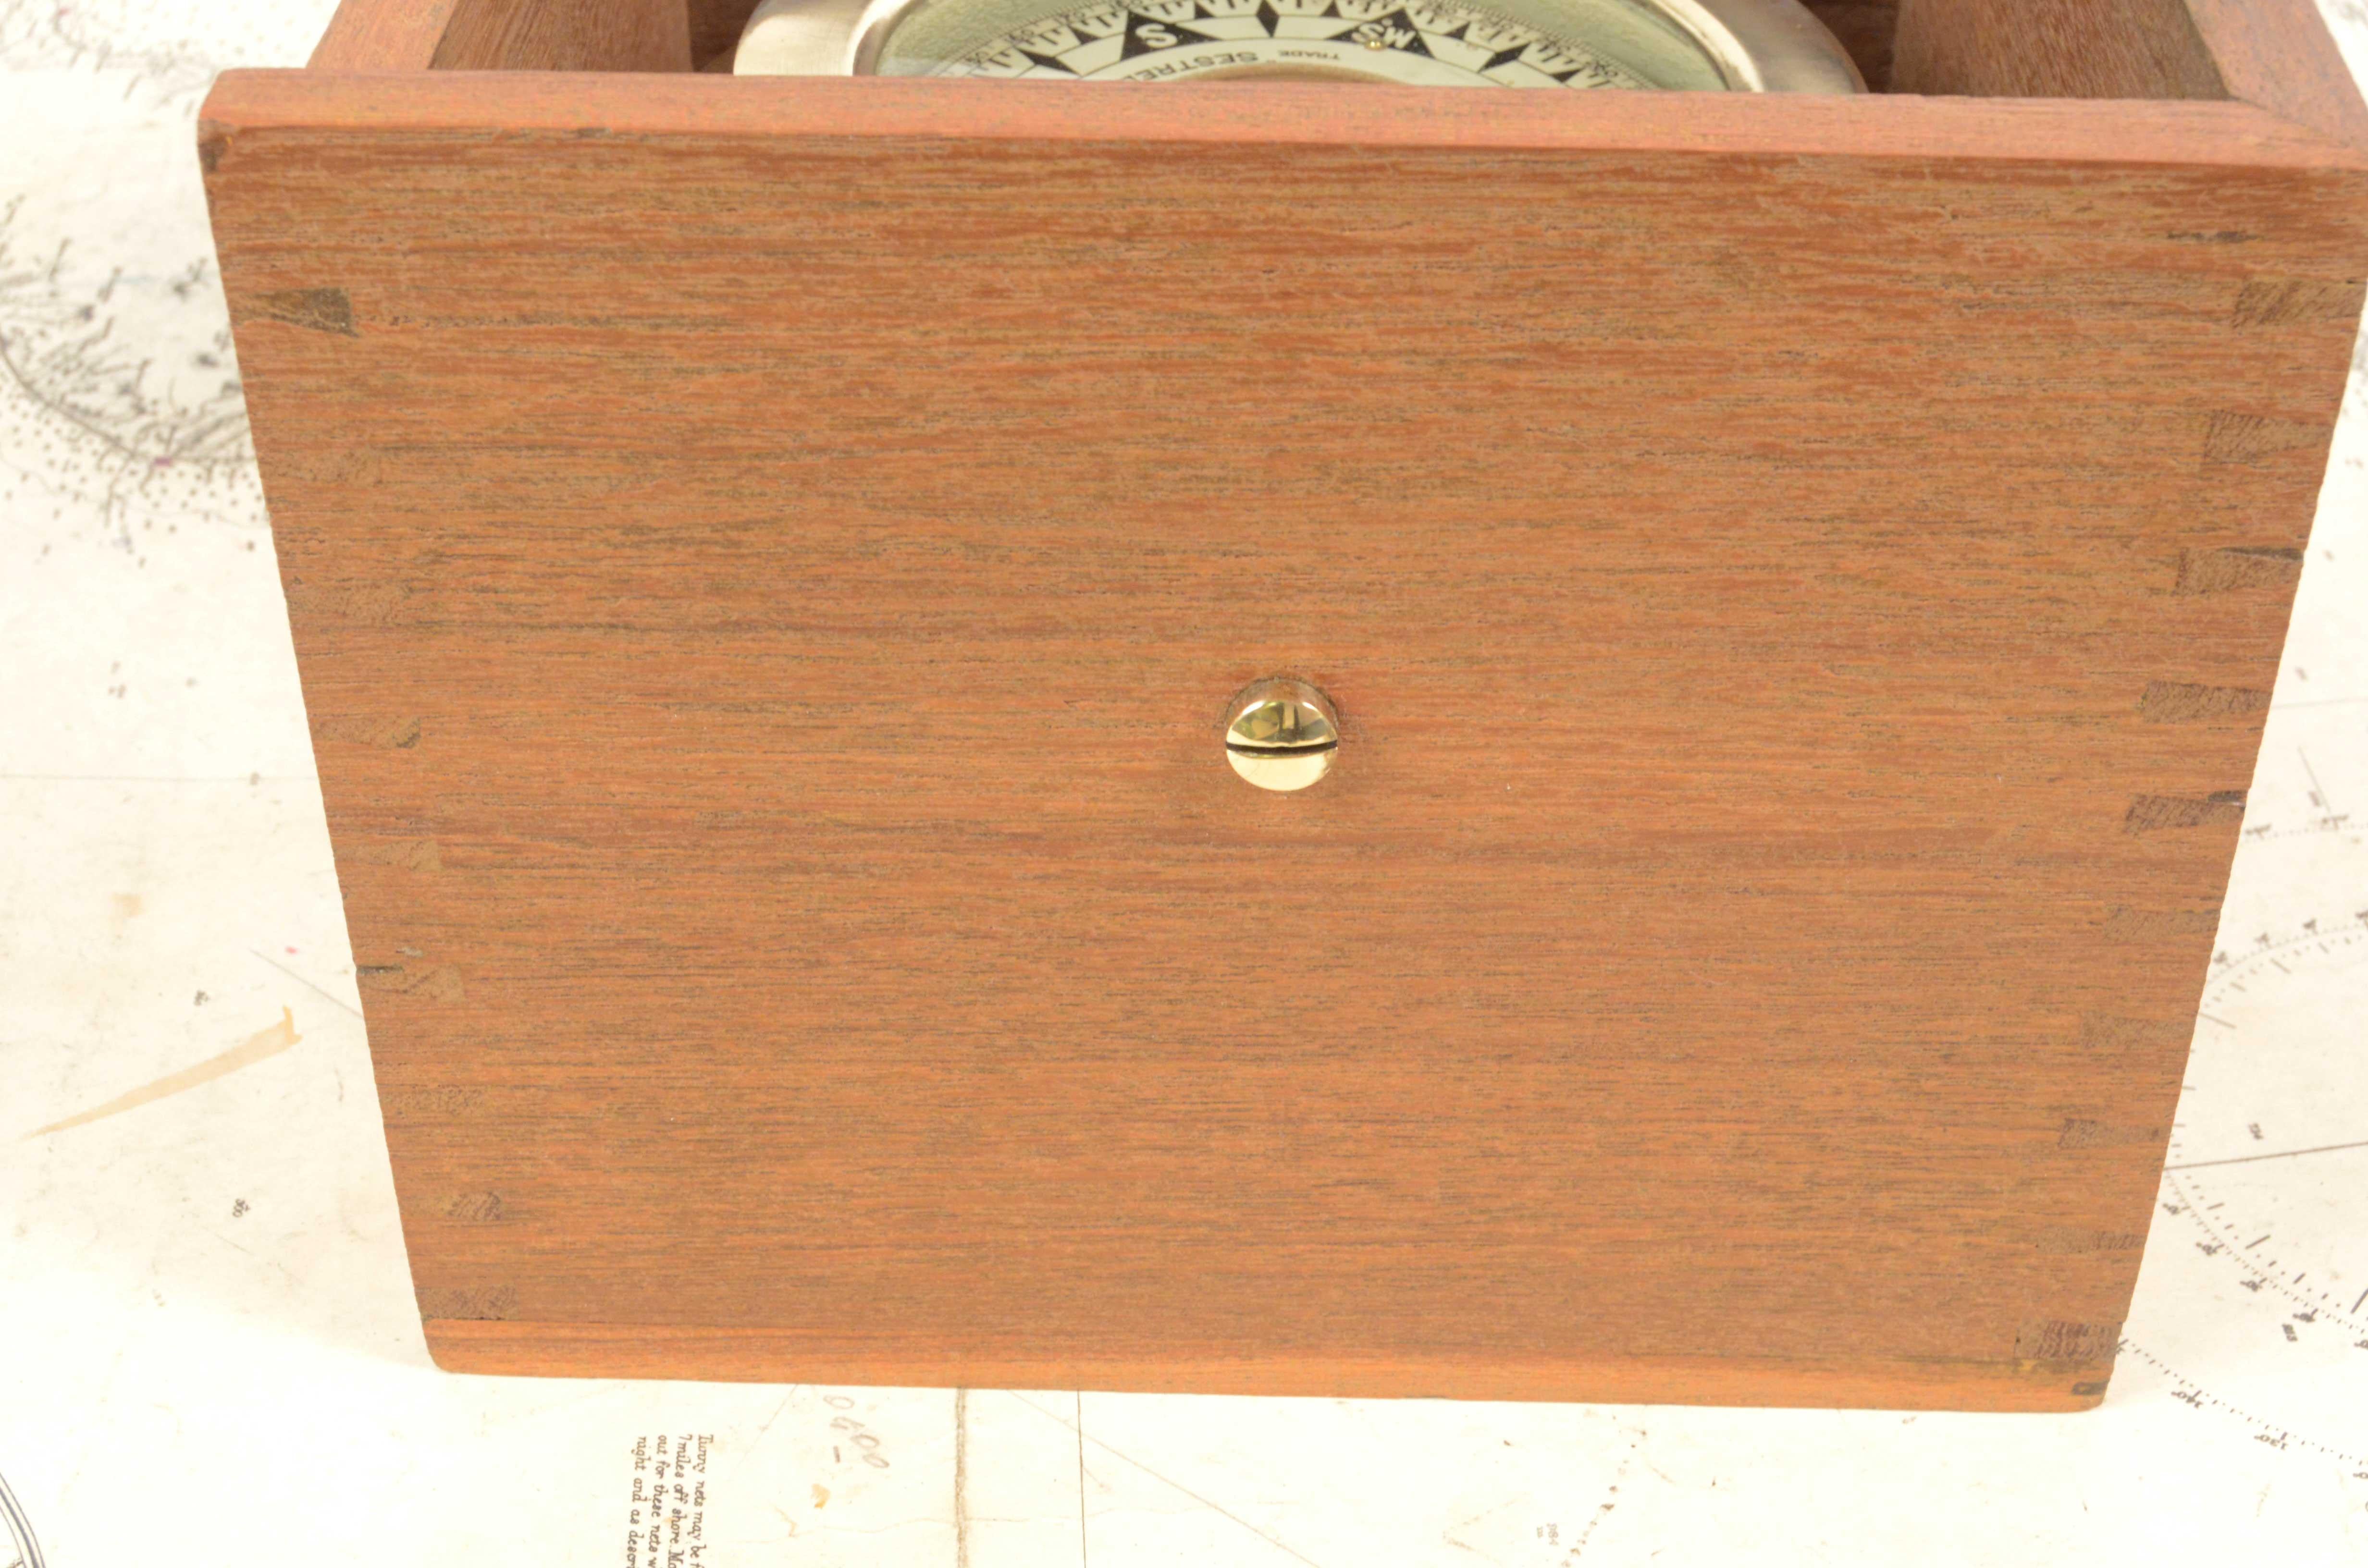 19th Century Magnetic Nautical Compass Original Box Antique Marine Nautical Tool 4